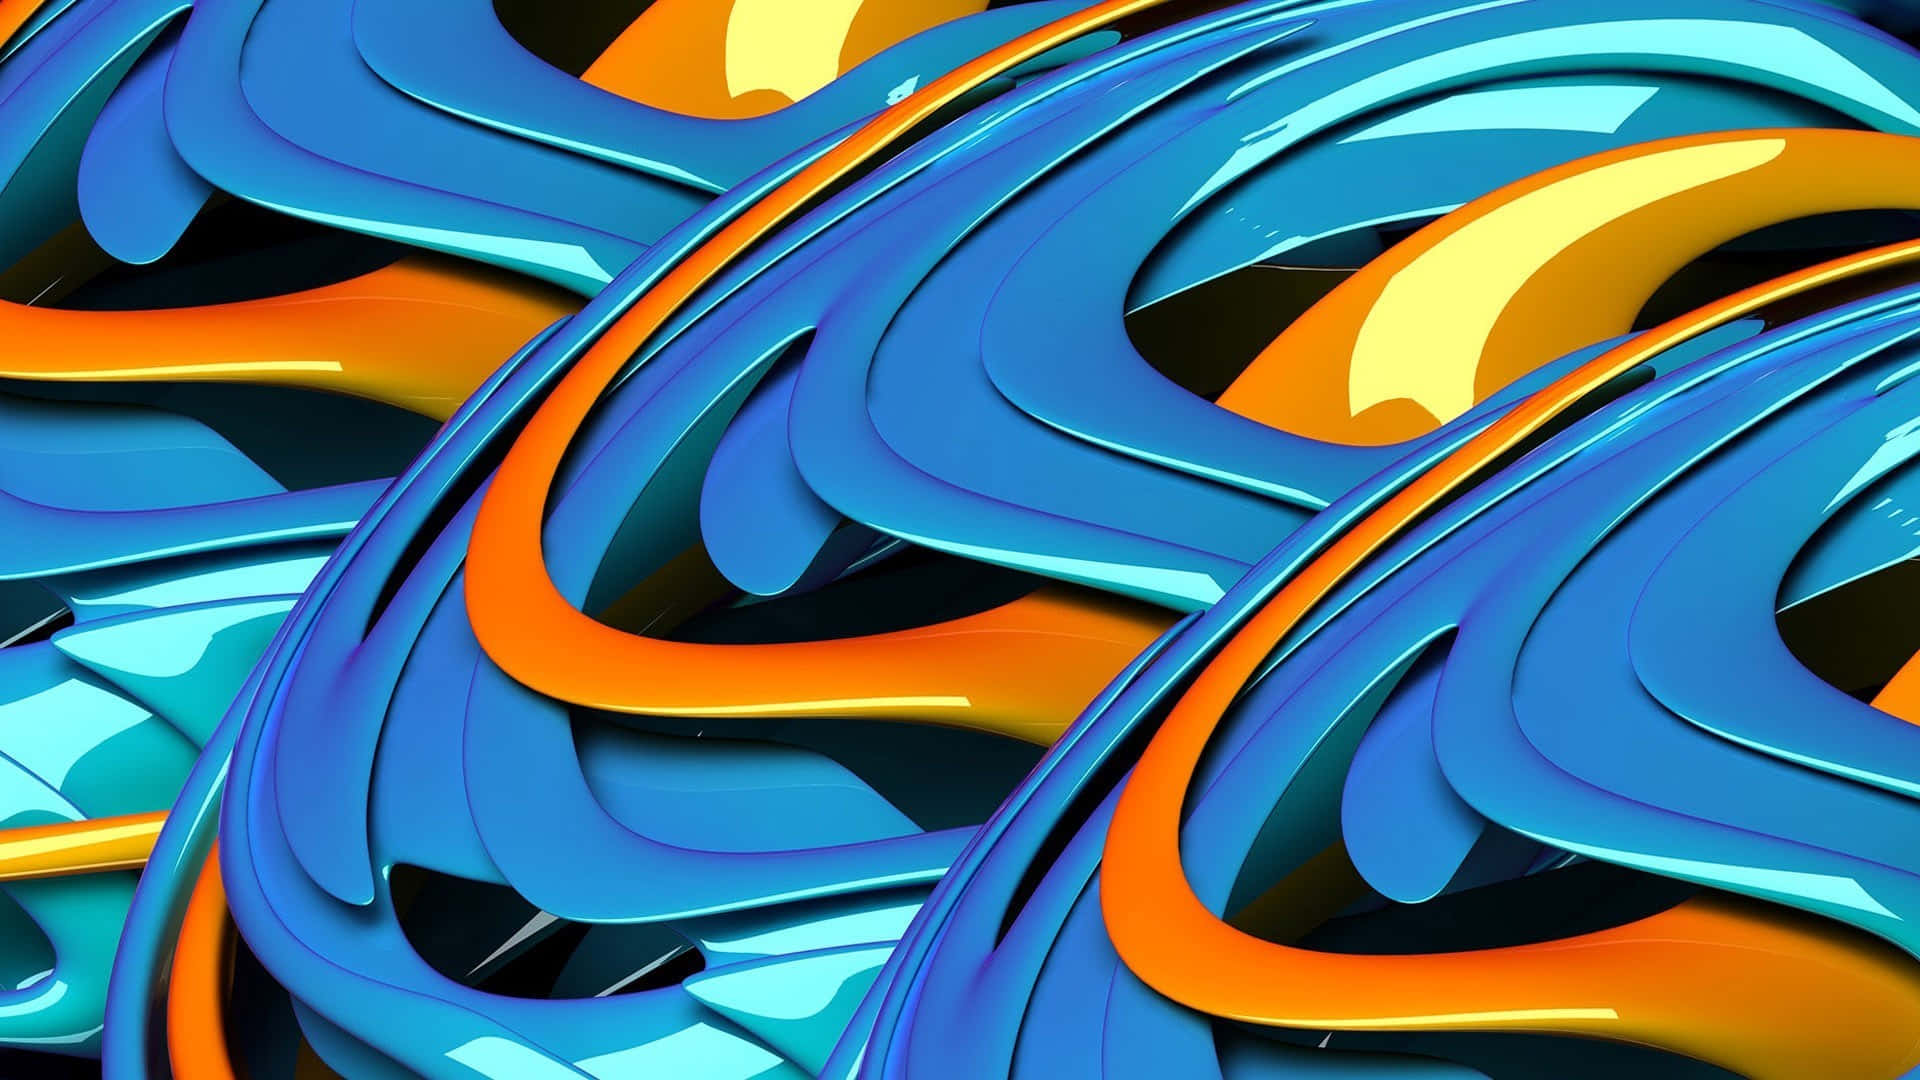 En blå og oransje abstrakt design som vil bringe nyanser til ethvert rom. Wallpaper